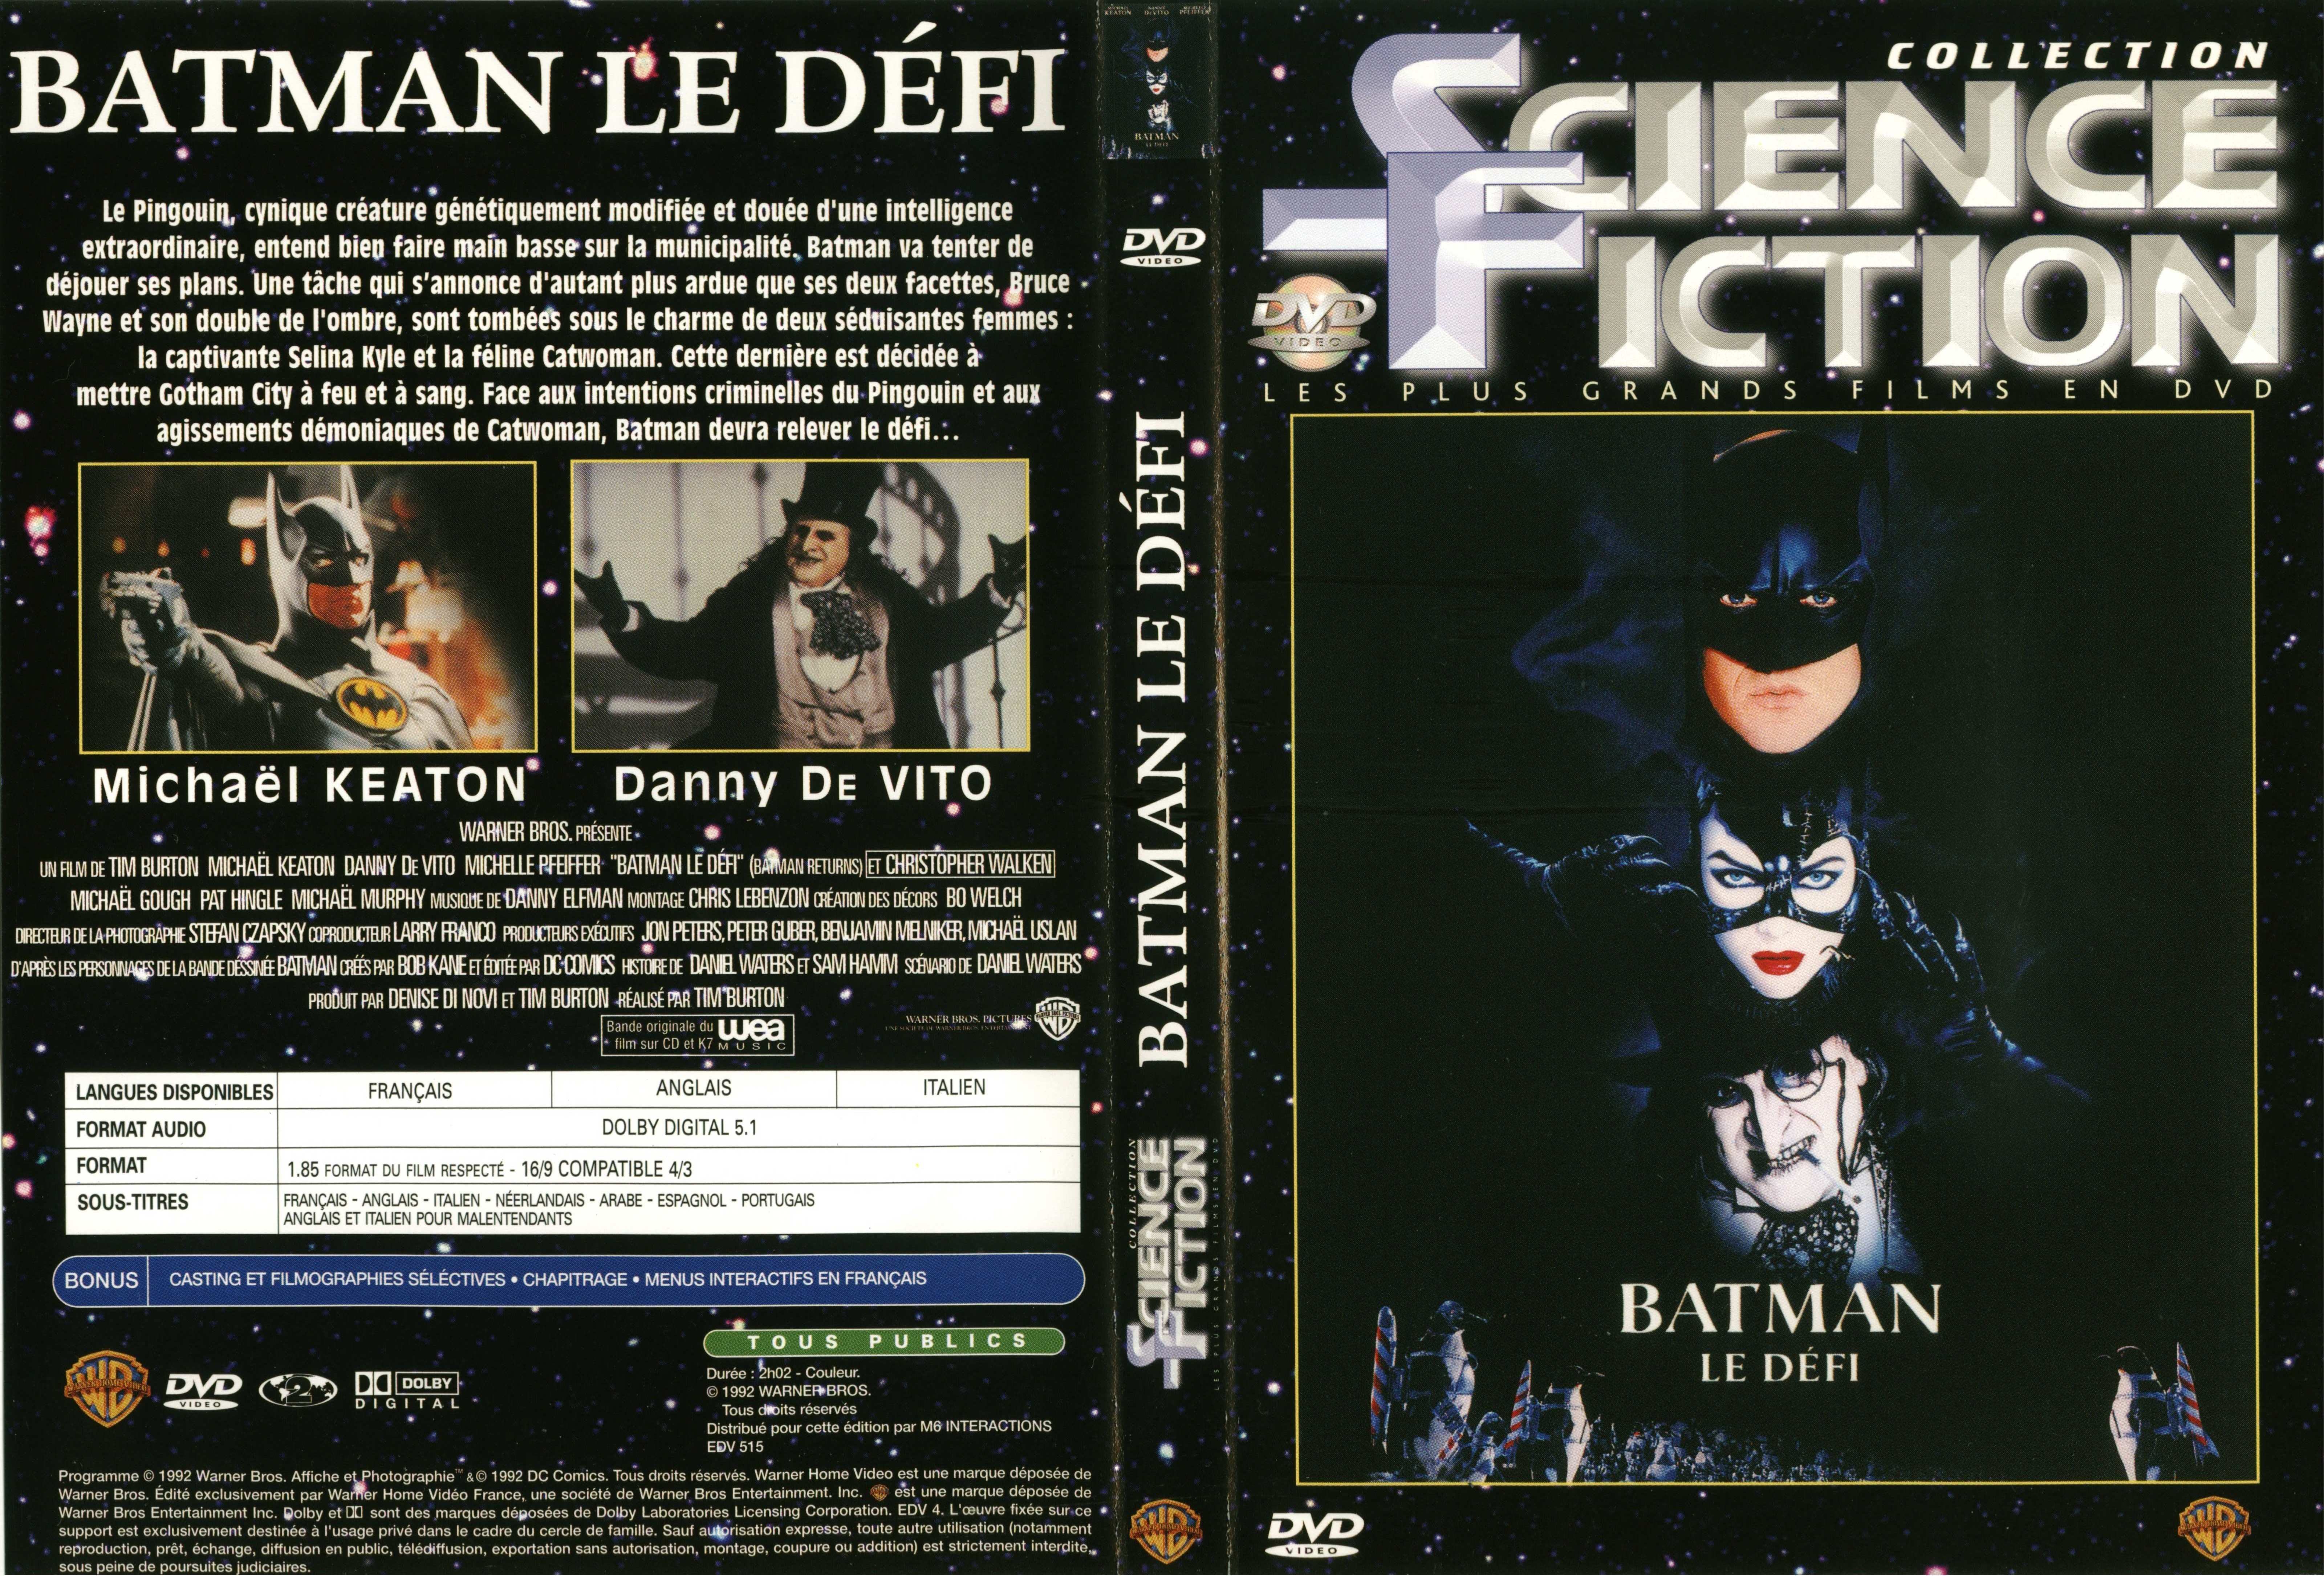 Jaquette DVD Batman le dfi v2